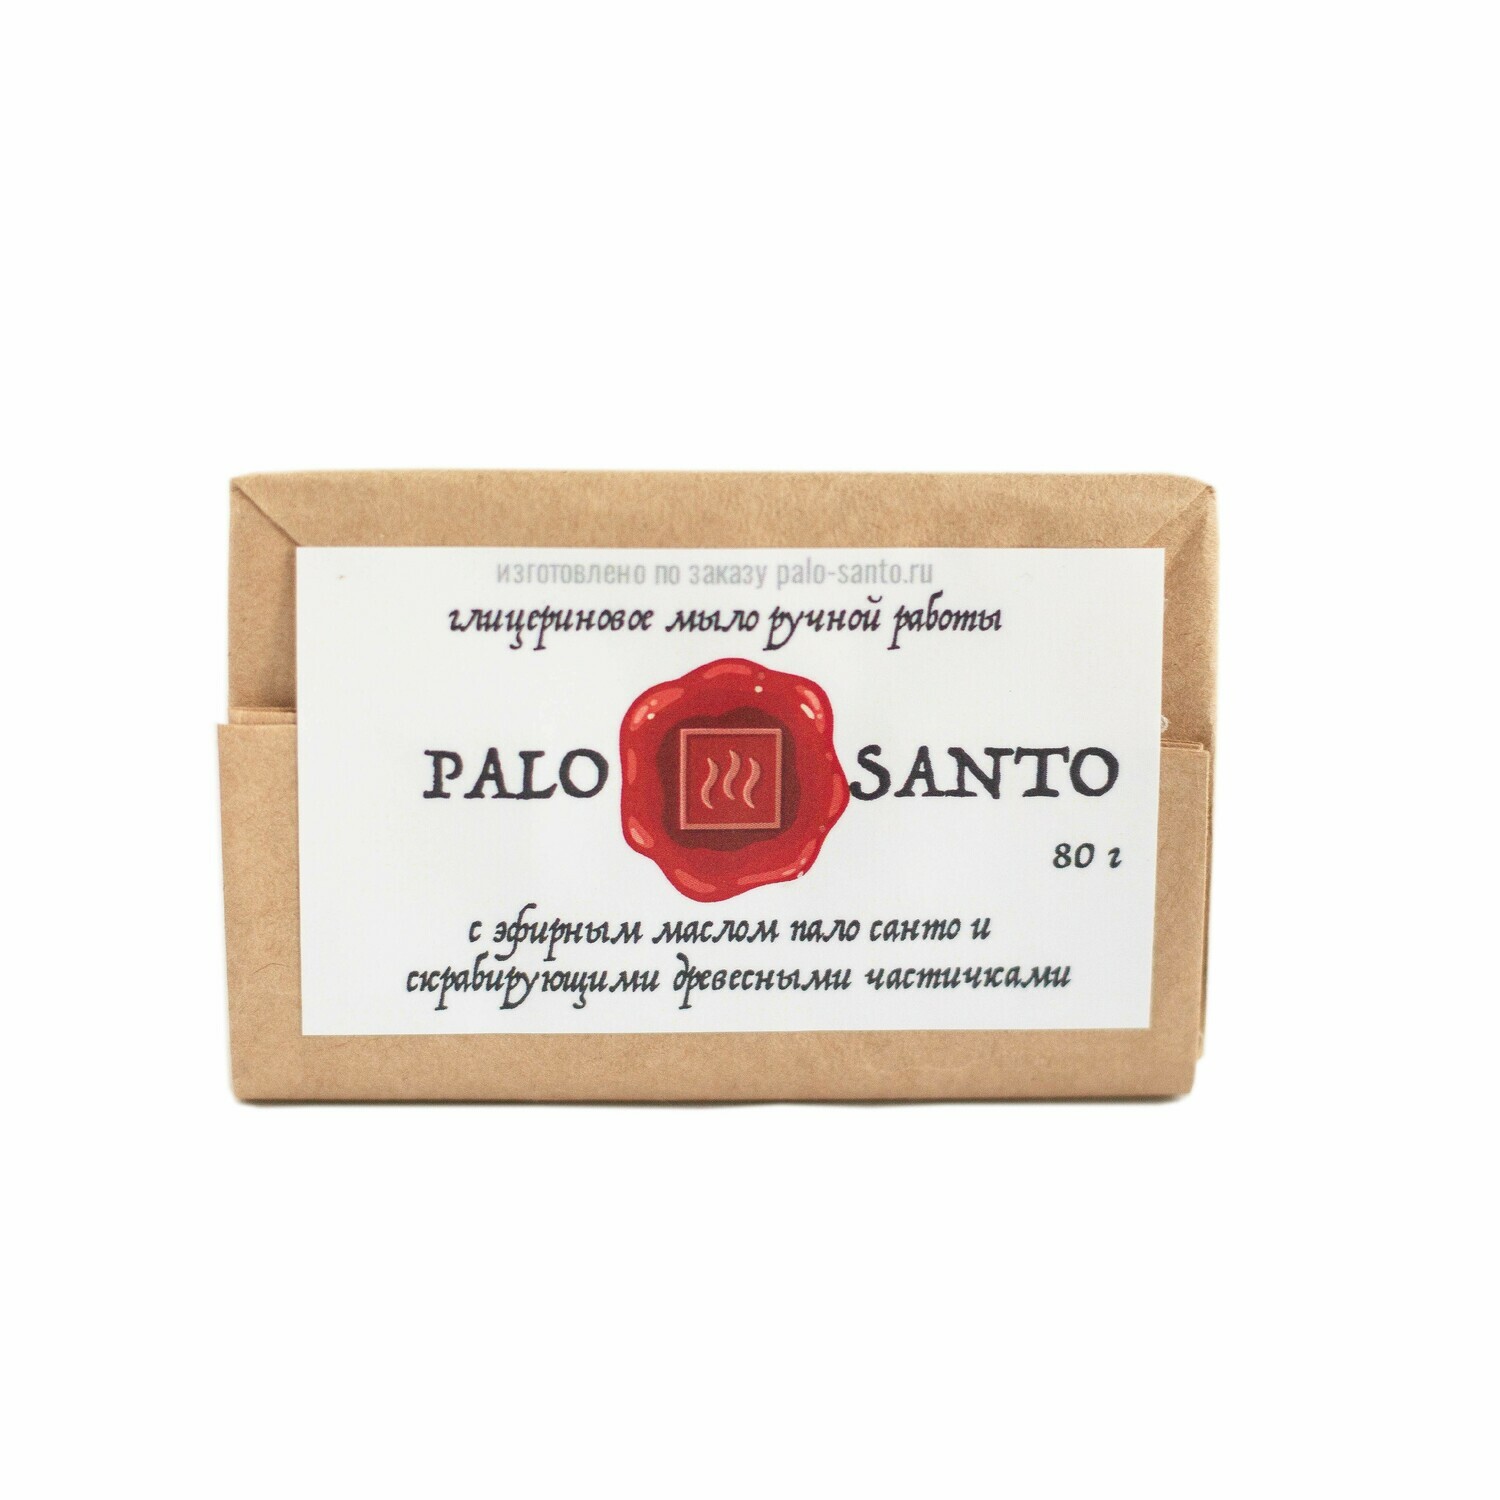 Ароматическое мыло Пало Санто и Древесные частички, 80 гр